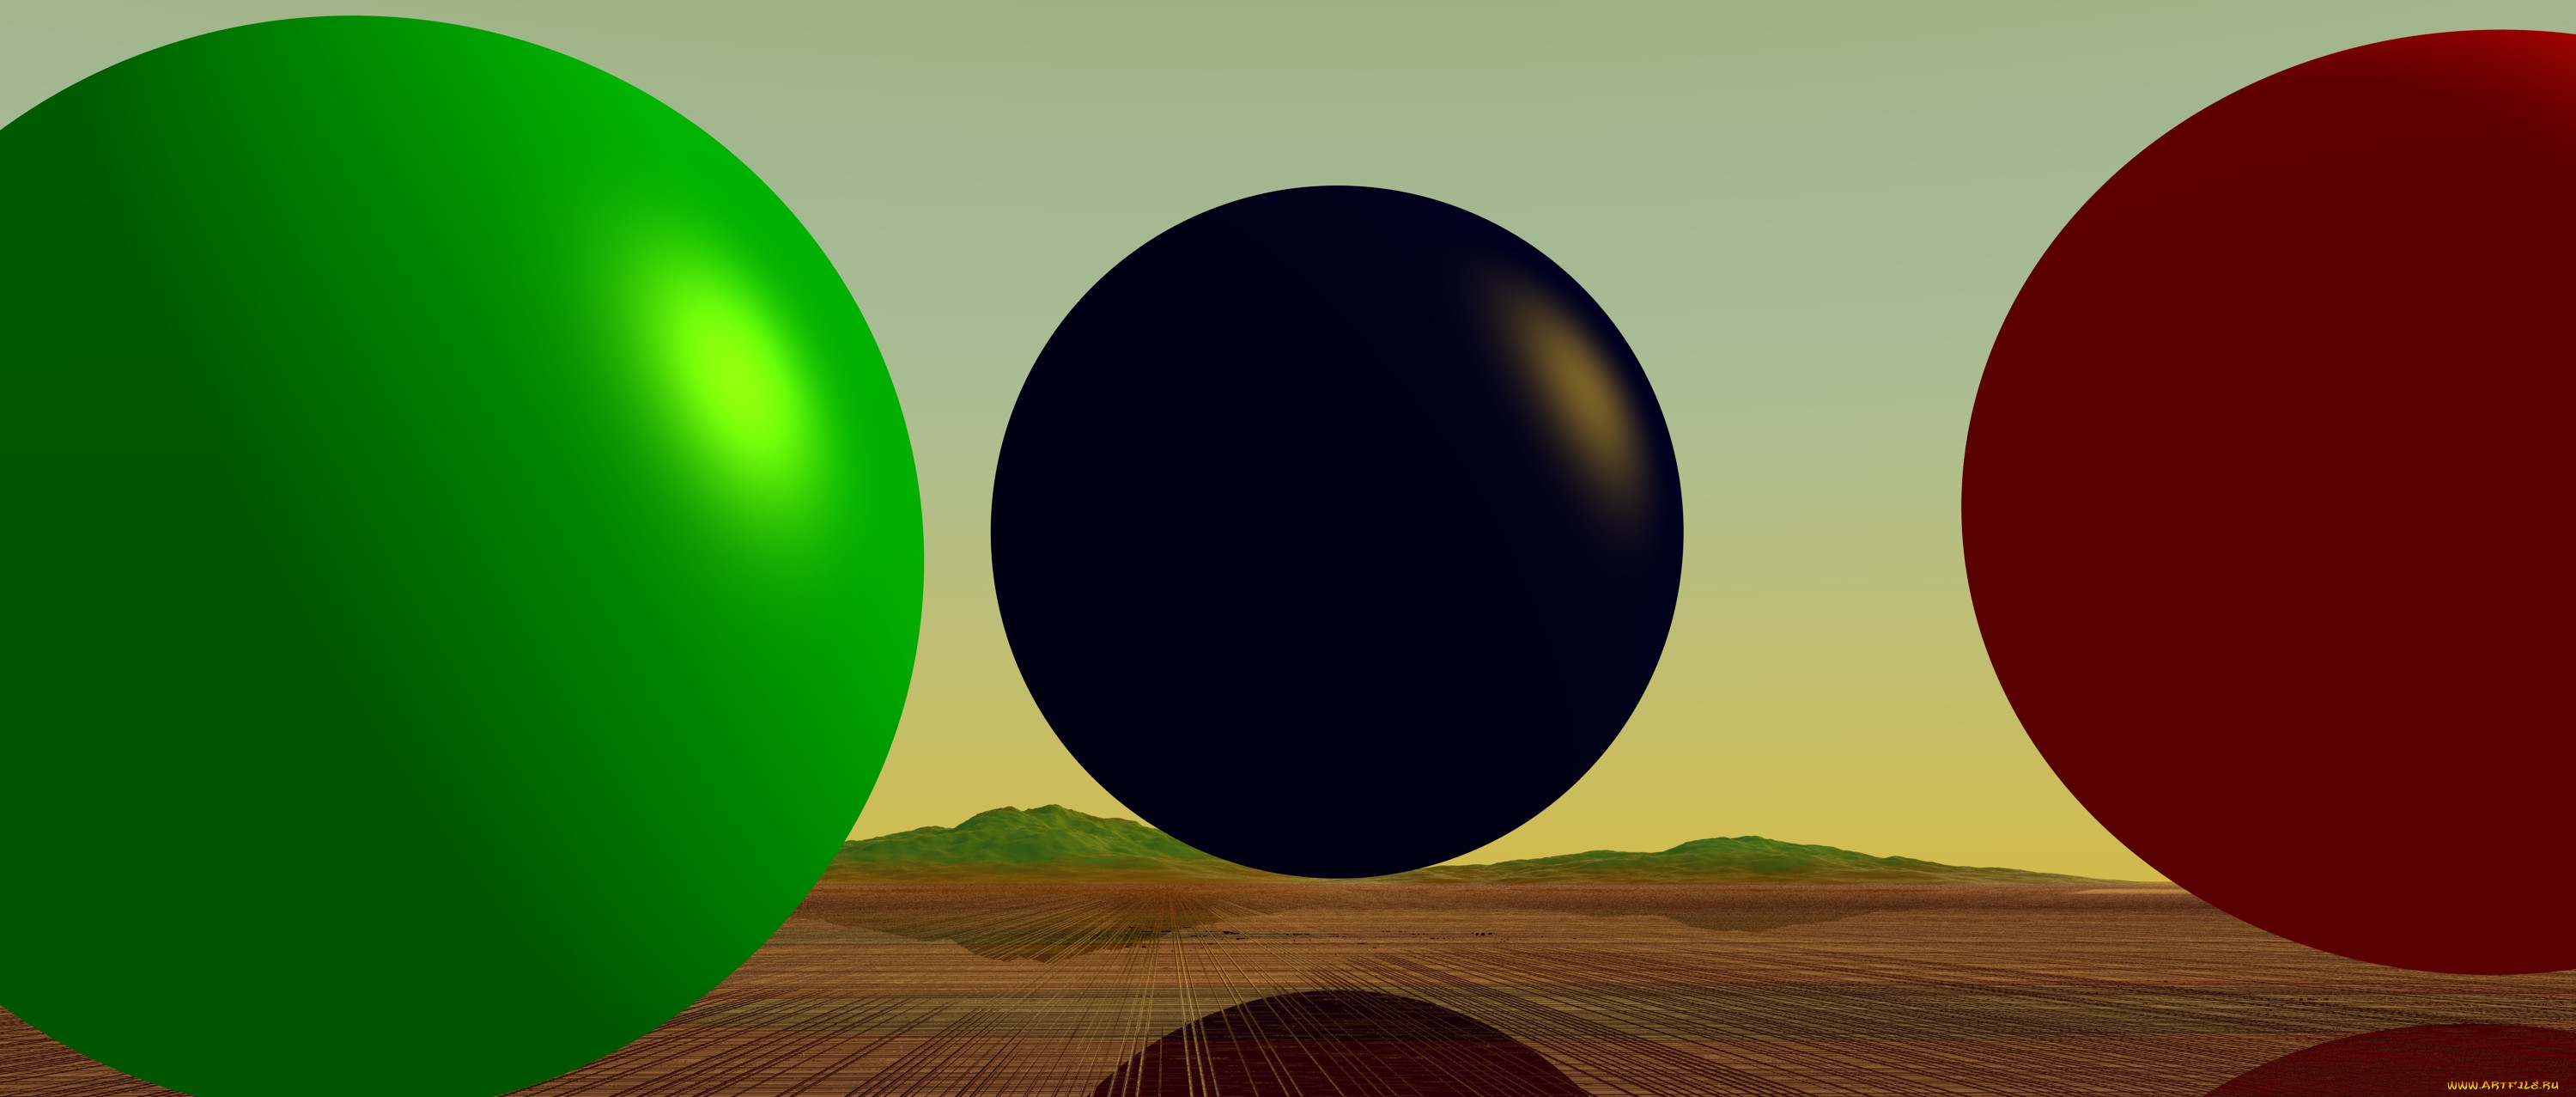 Меткий шар. Шар Графика. Шар 3д рисунок. Фон шар геометрия. Моделирование поверхности земли возьмите небольшой шар или мяч.